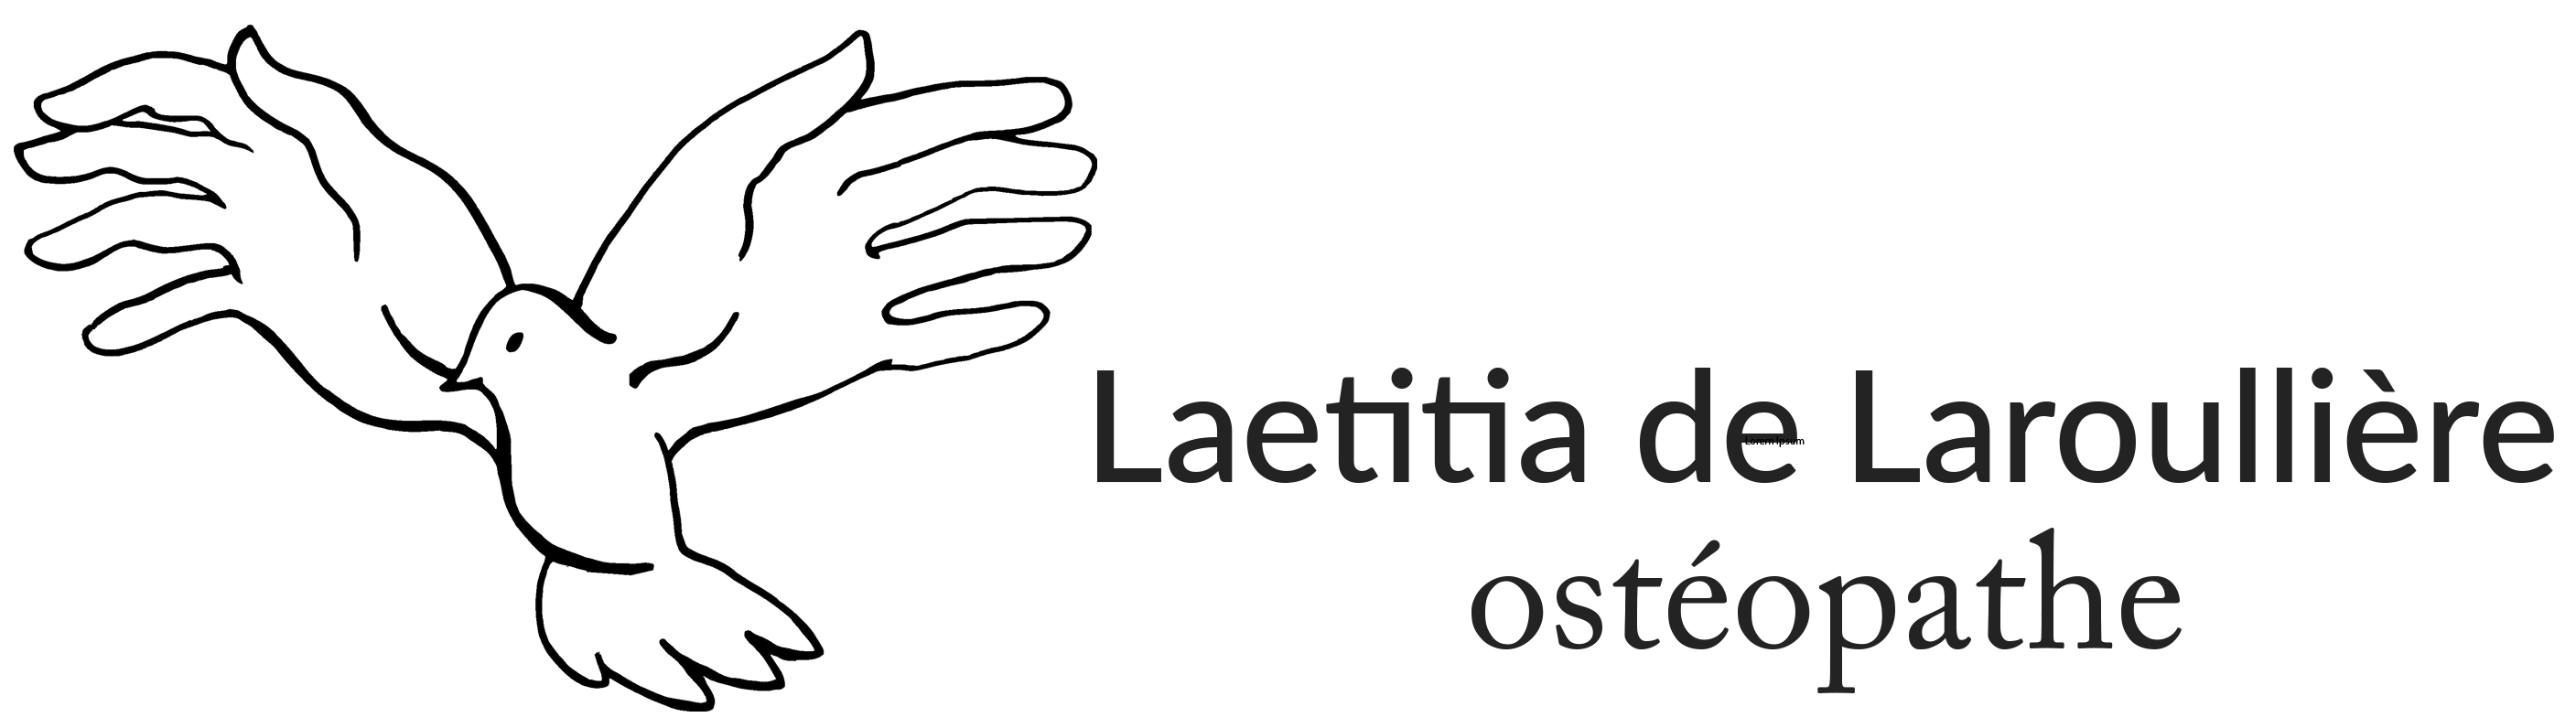 Logo Laetitia de Laroullière